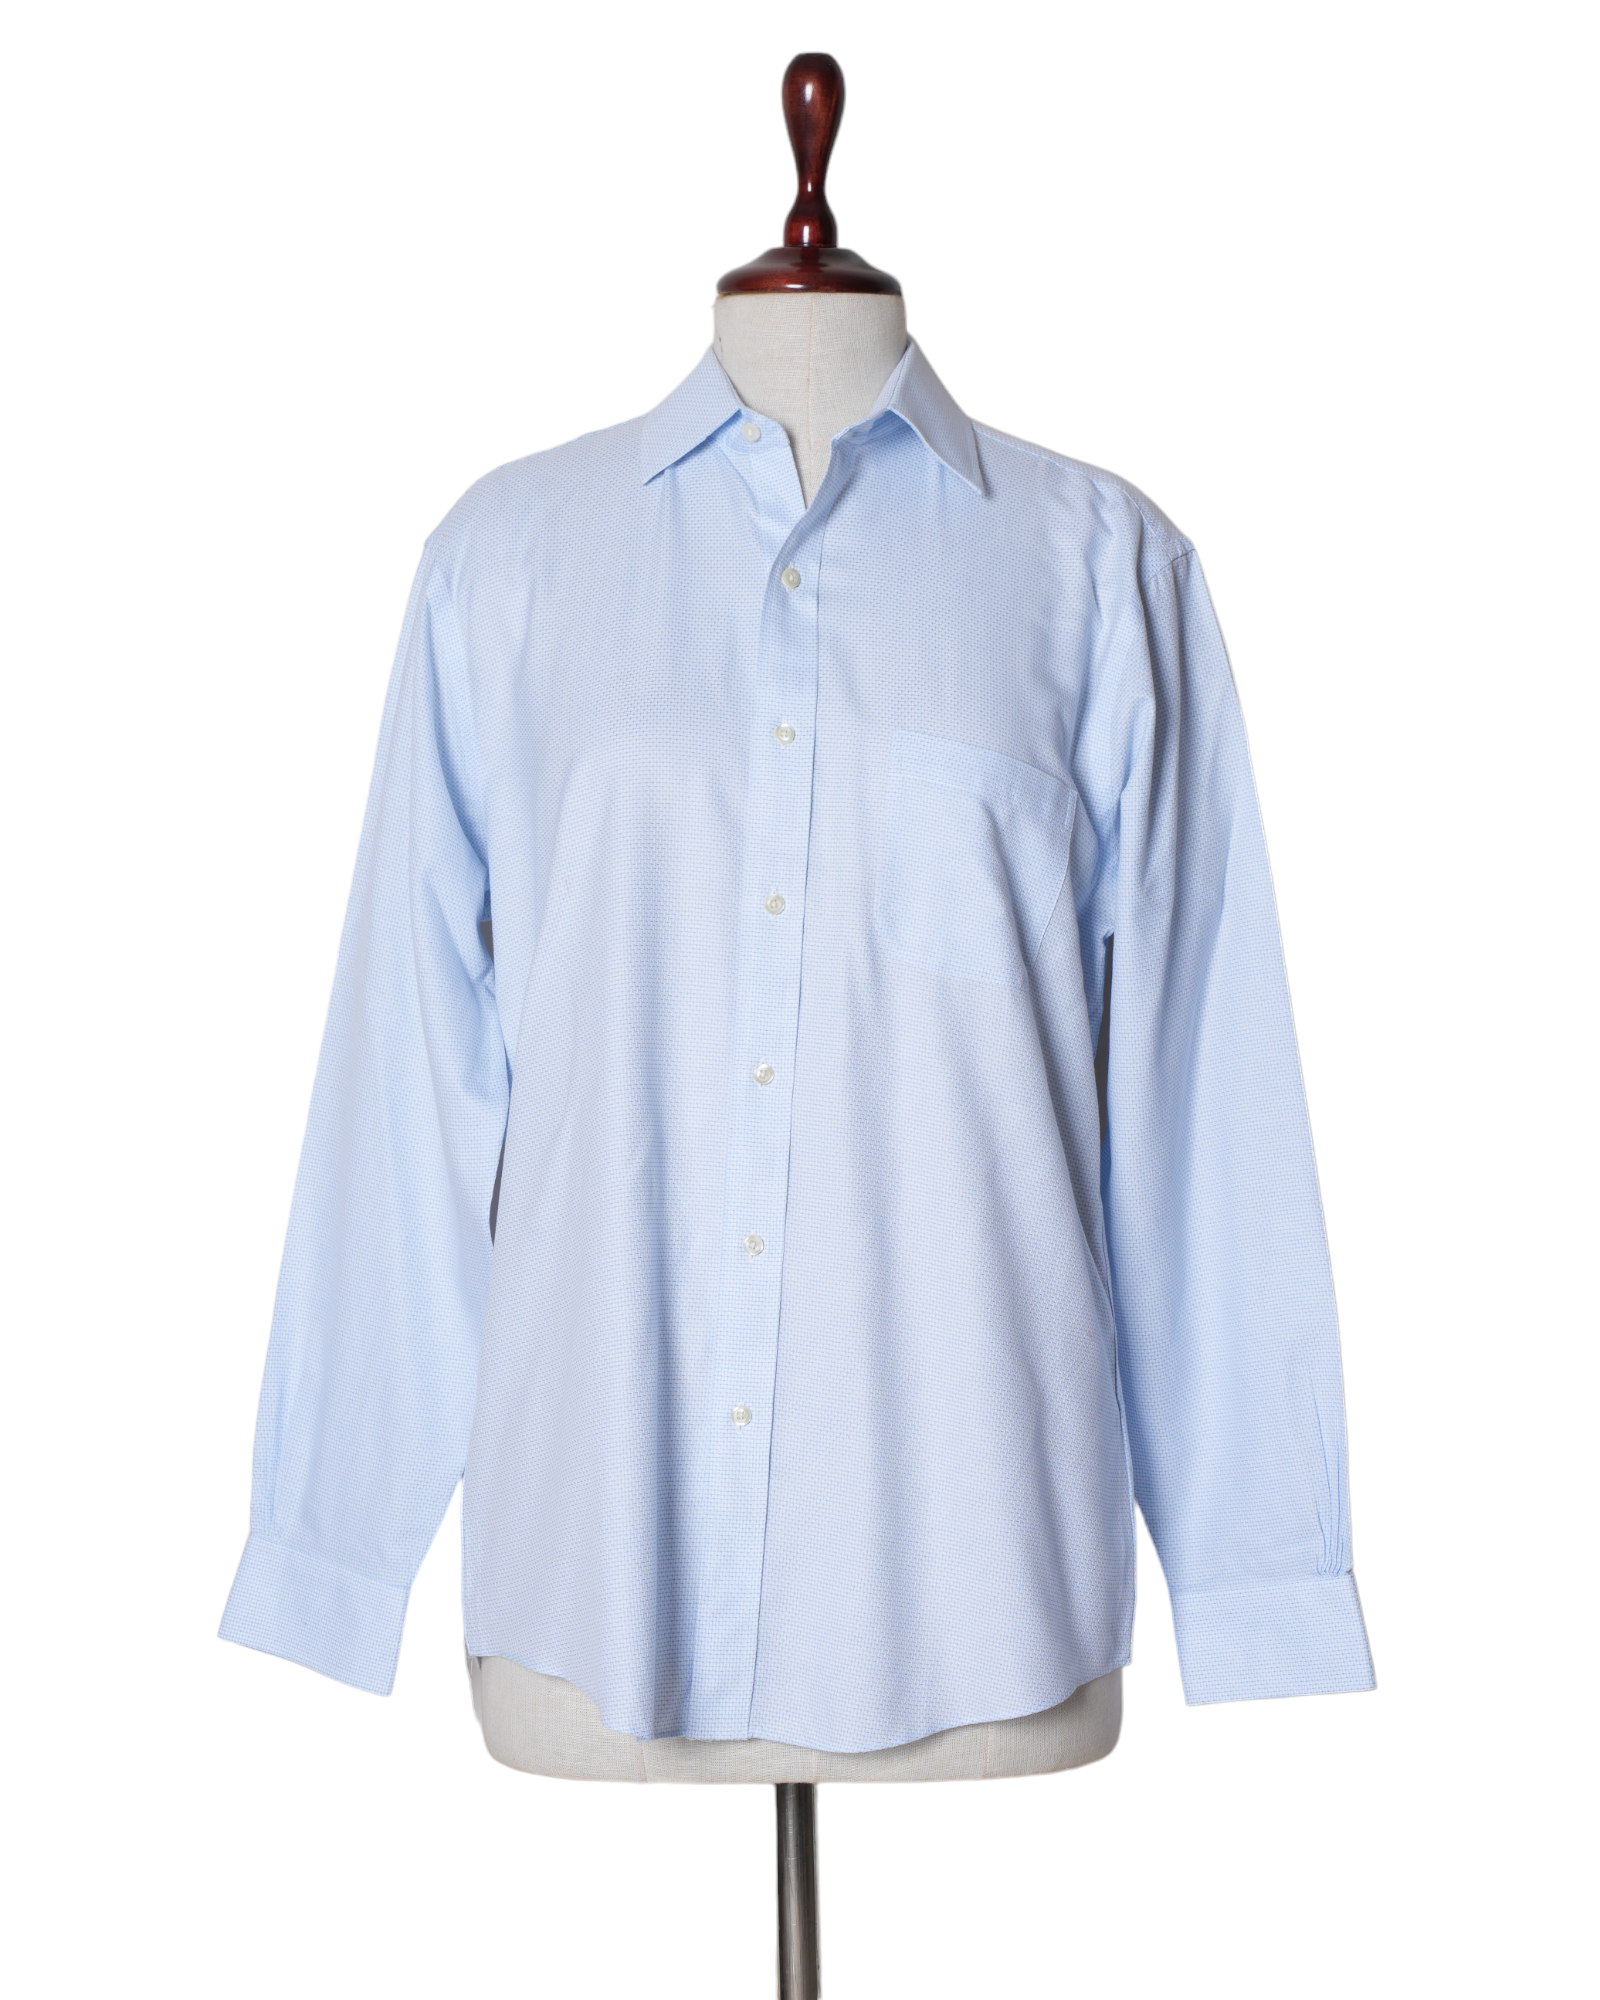 Brooks & Brothers Plain Blue Shirt